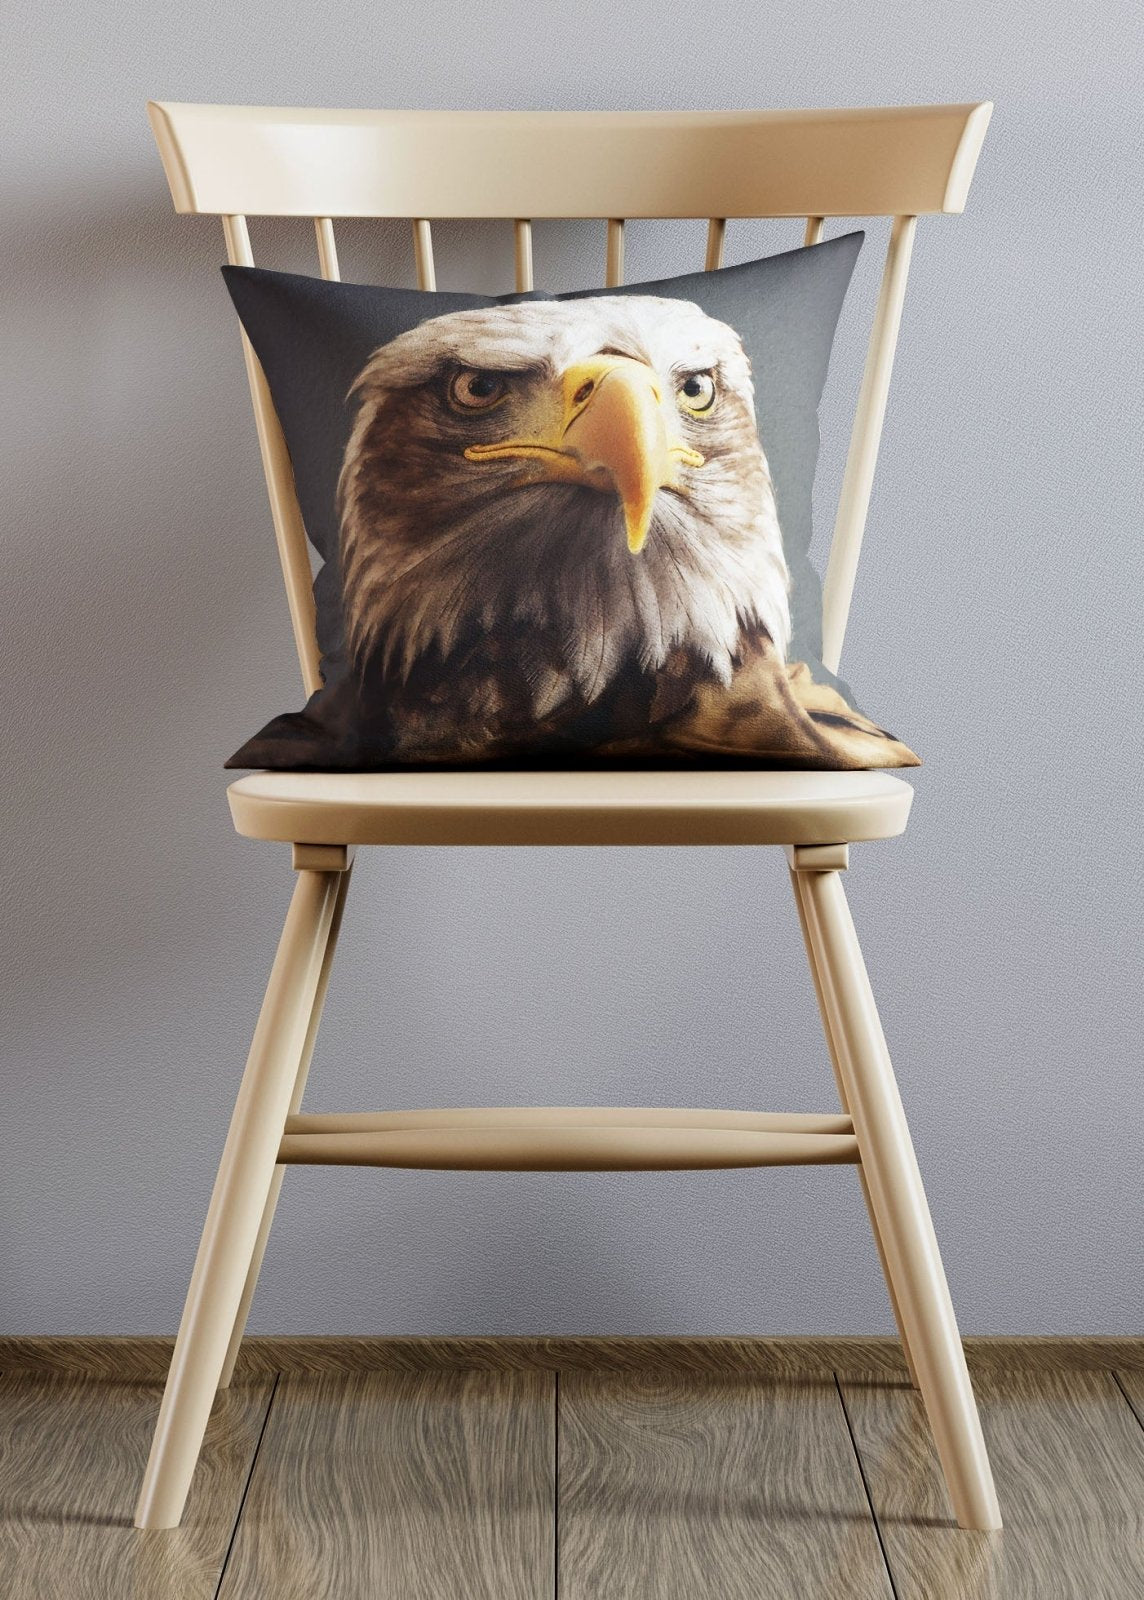 American Eagle Animal Portrait Cushion